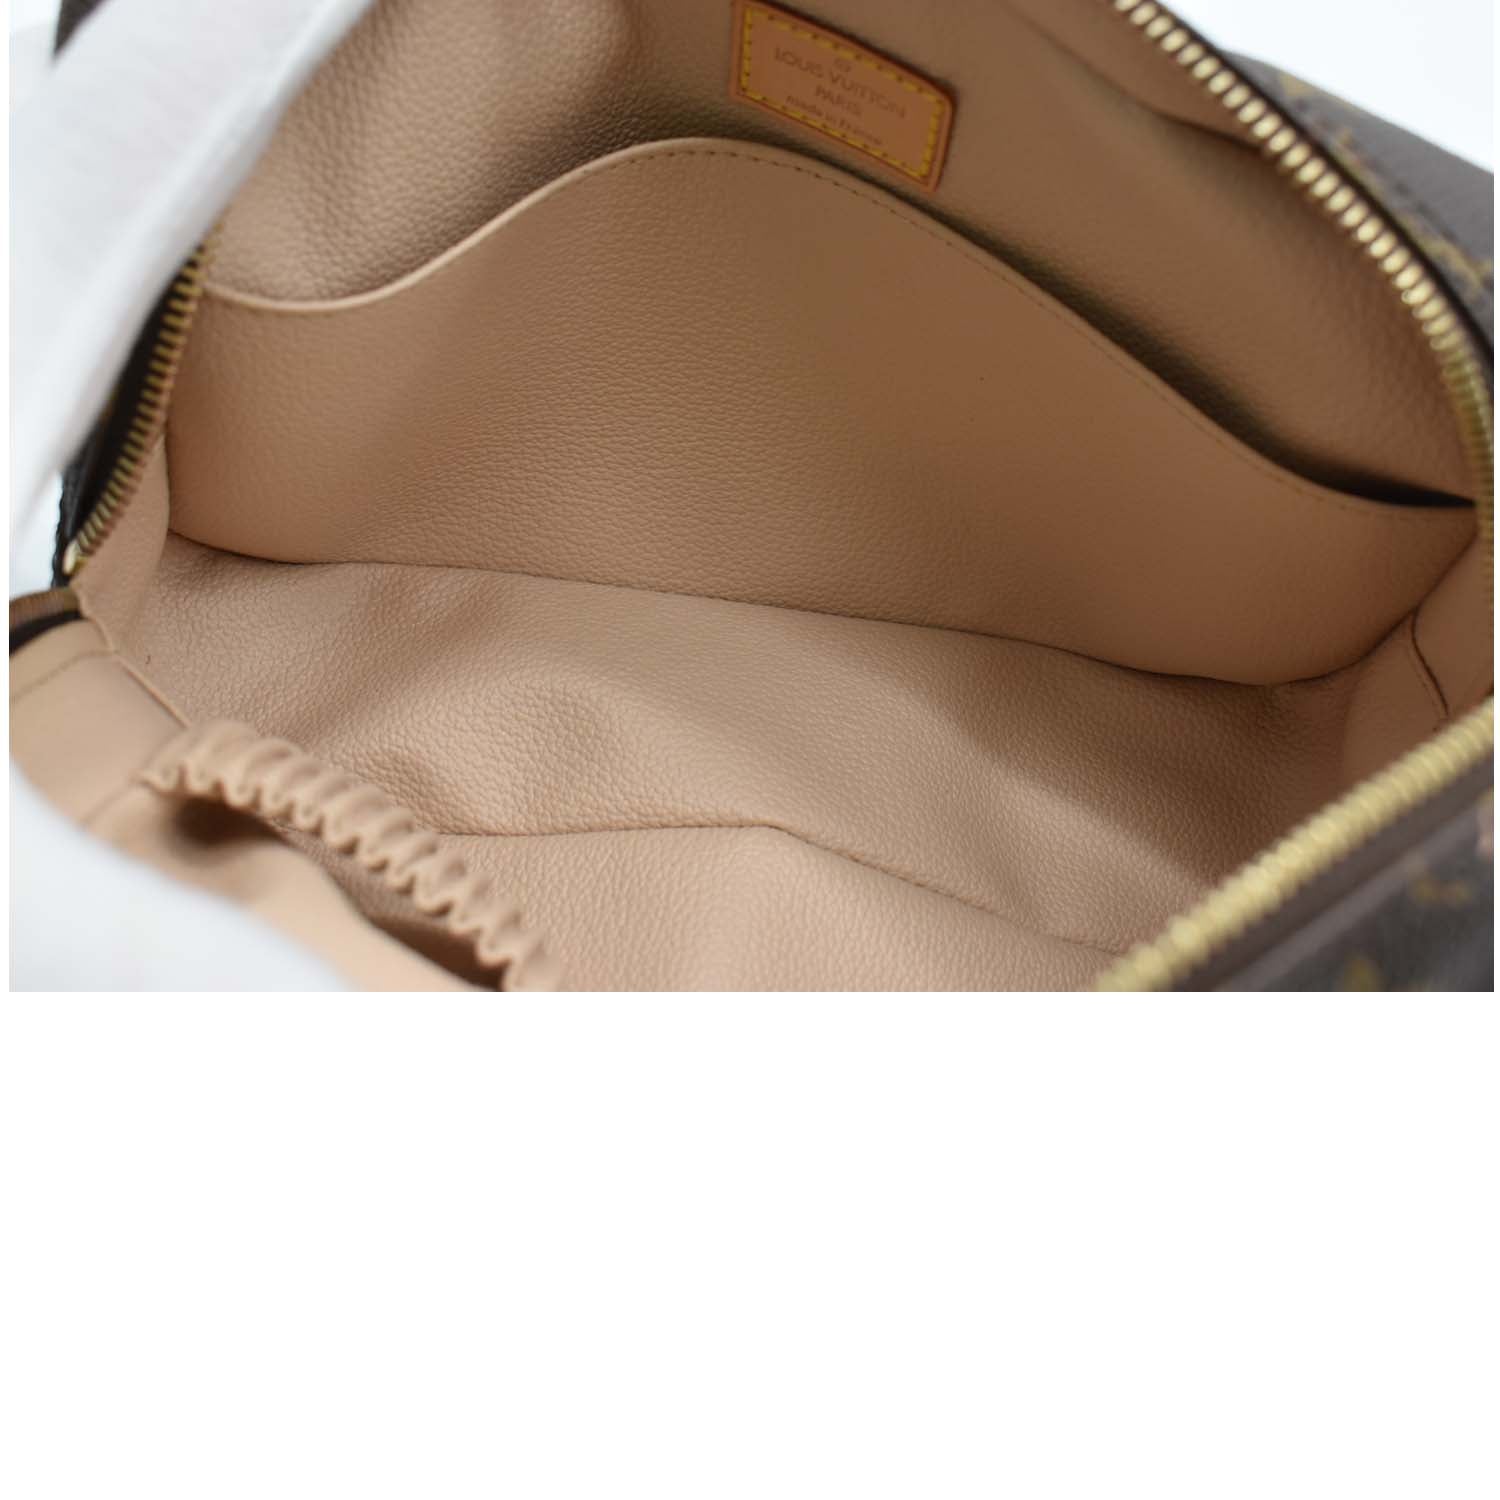 Trousse de toilette leather vanity case Louis Vuitton Brown in Leather -  34988277